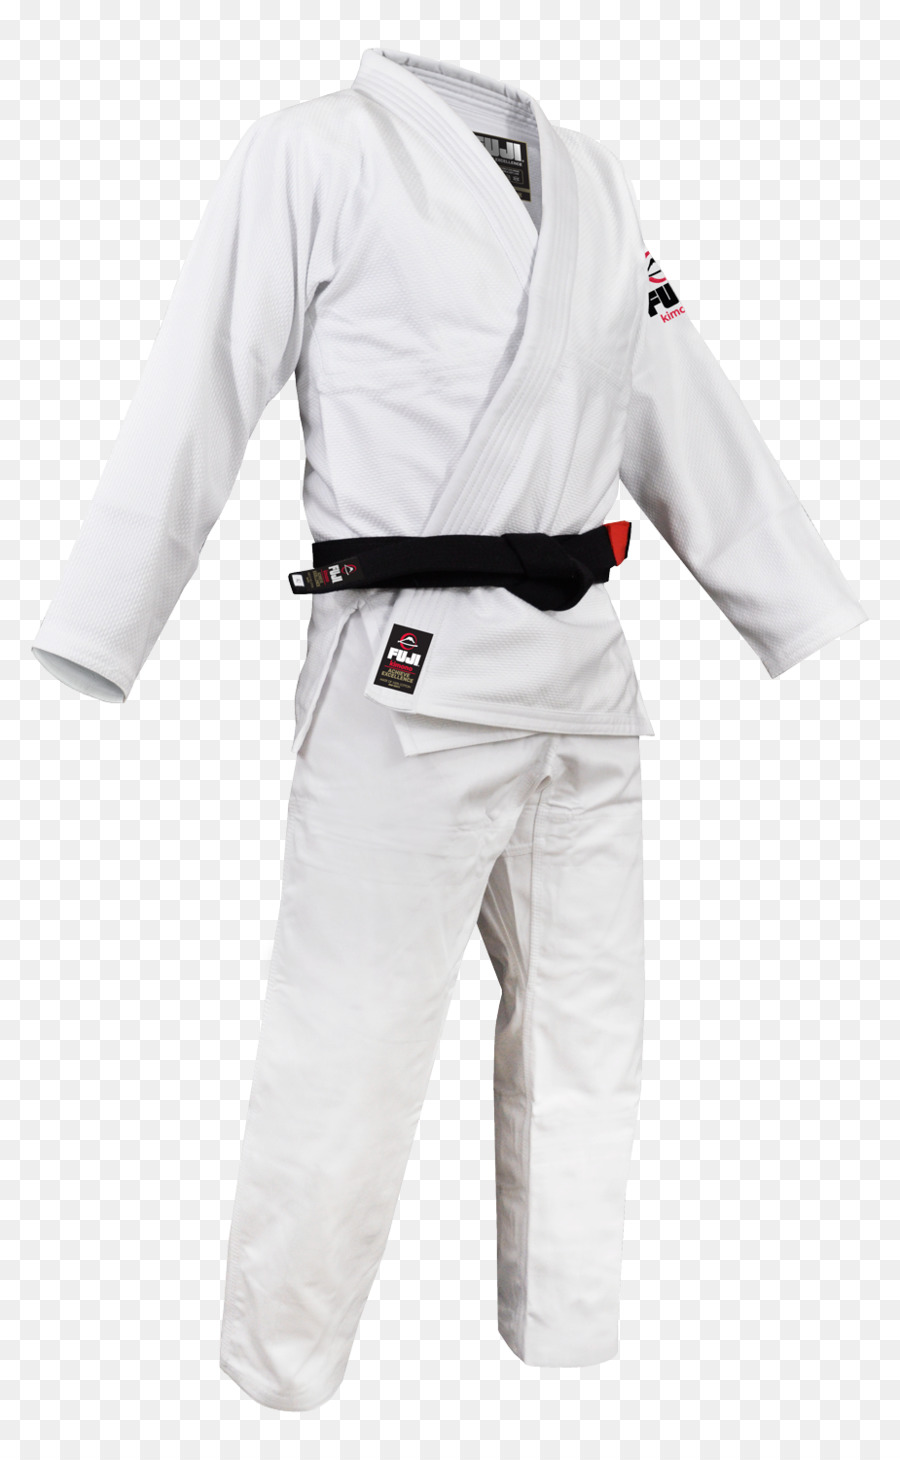 Karate Gi Clothing Png Download 9251500 Free - 